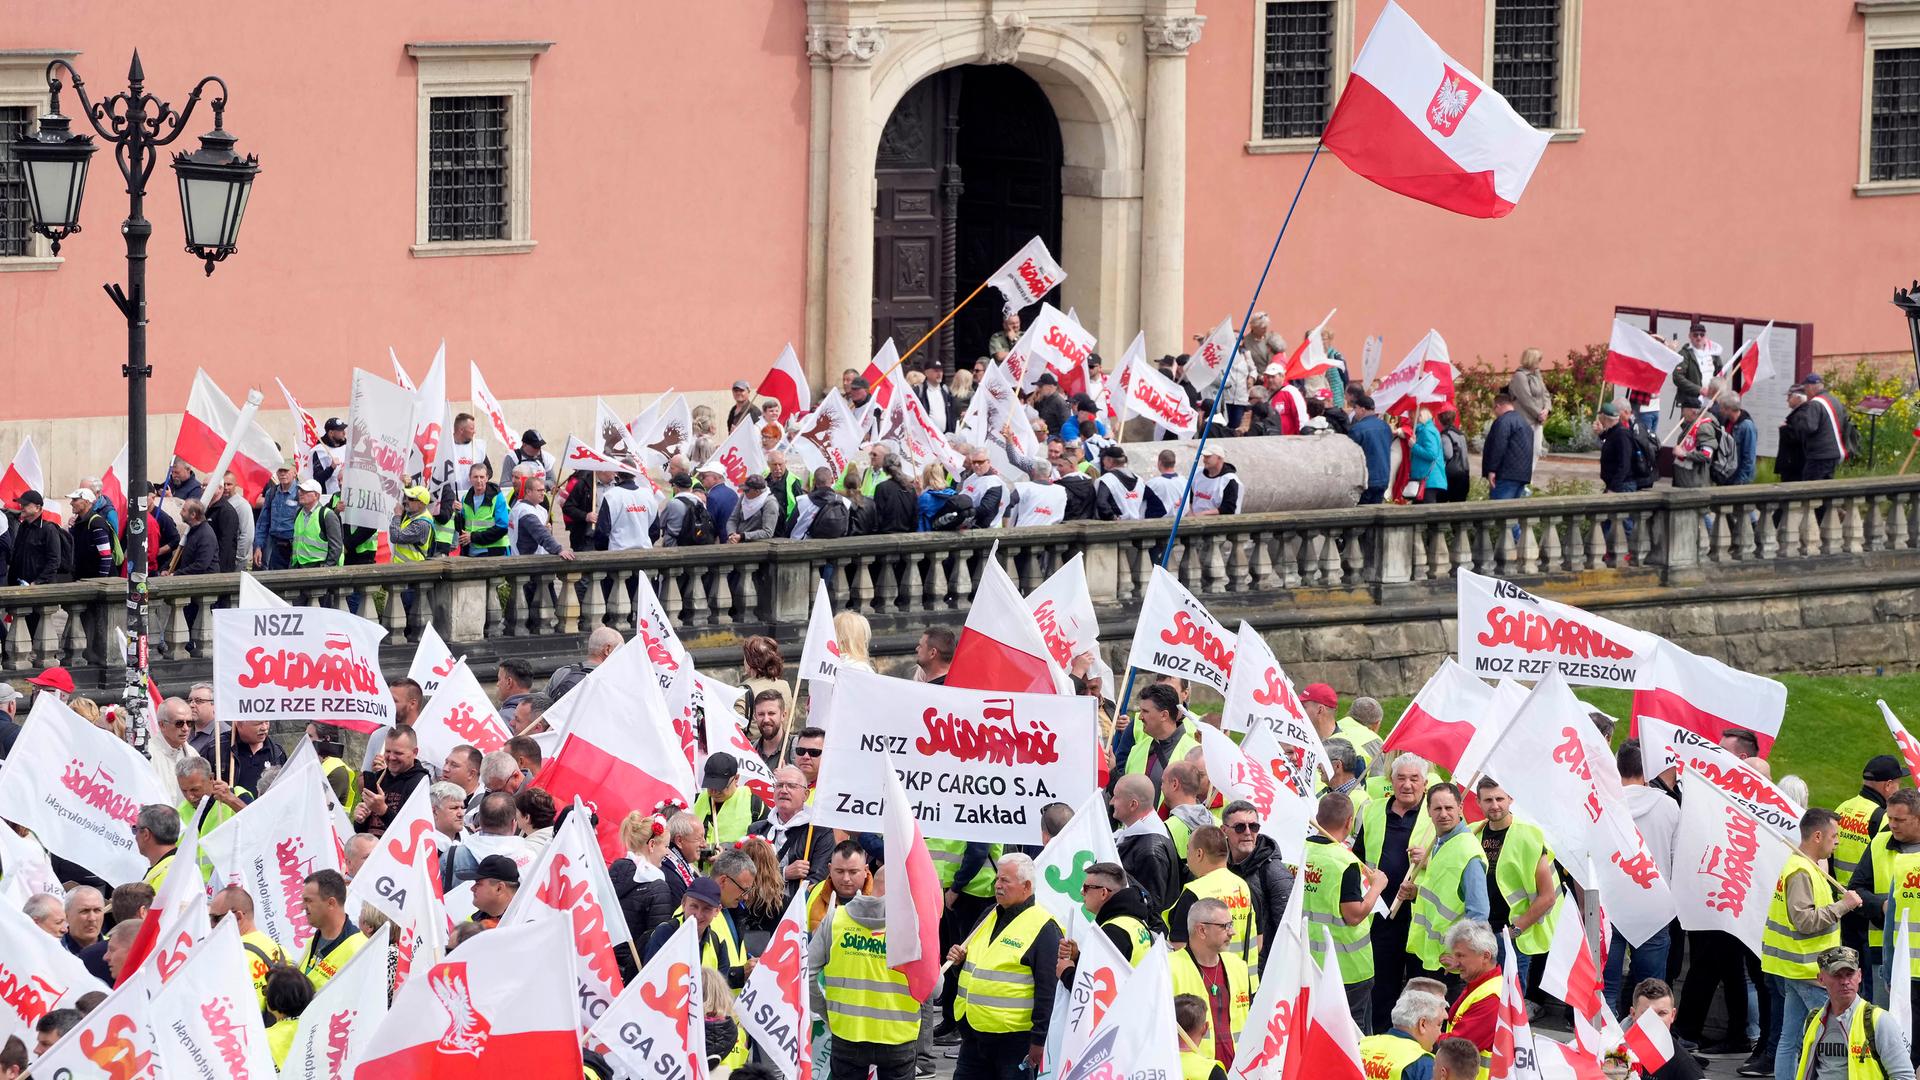 Polnische Landwirte und andere Demonstranten versammeln sich in der Warschauer Innenstadt, schwecken die weiß-rote Nationalflagge und zeigen Schilder.